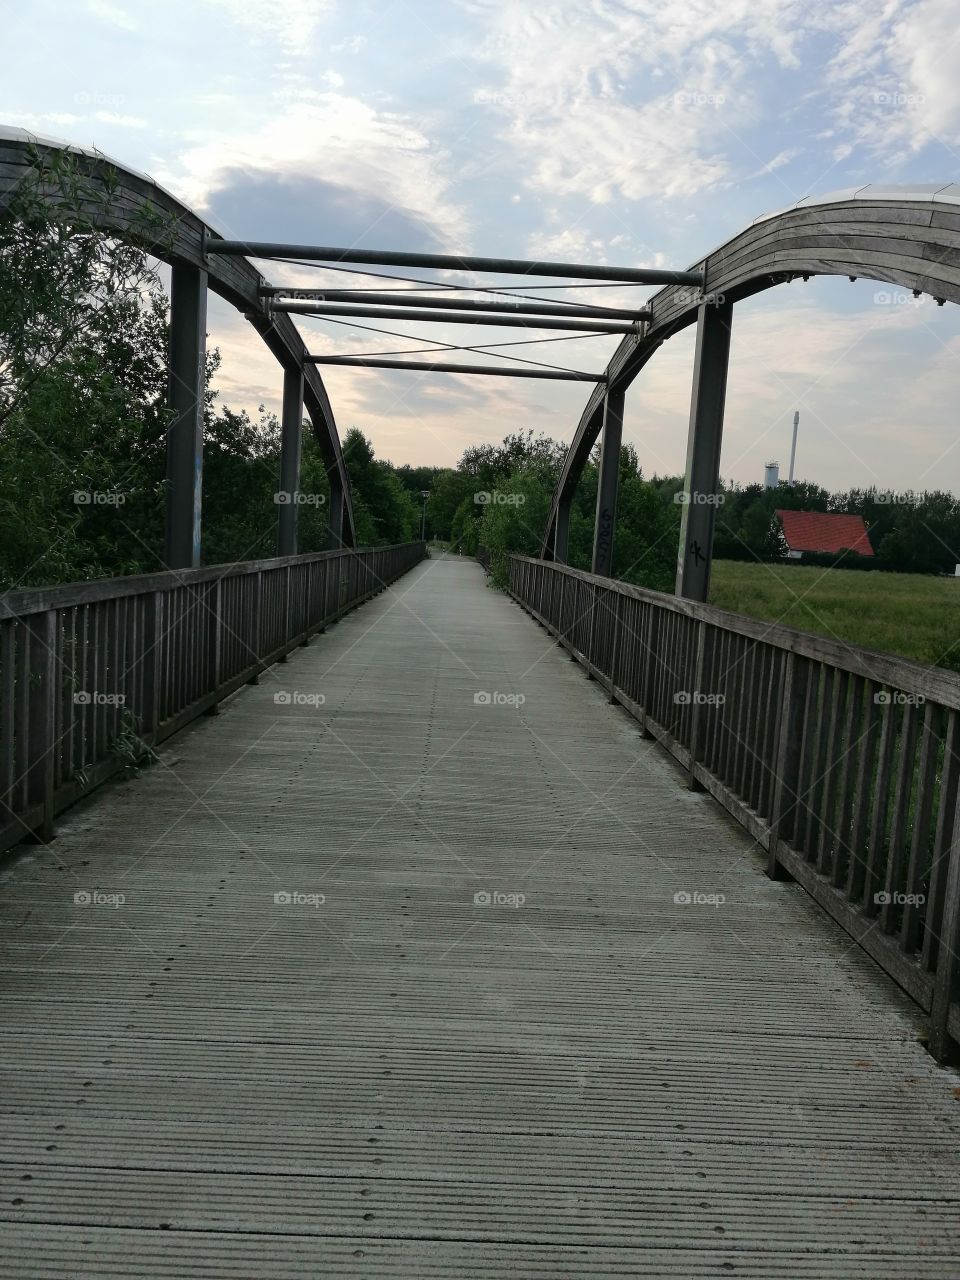 Die Brücke

The bridge of the walking death and bicycle